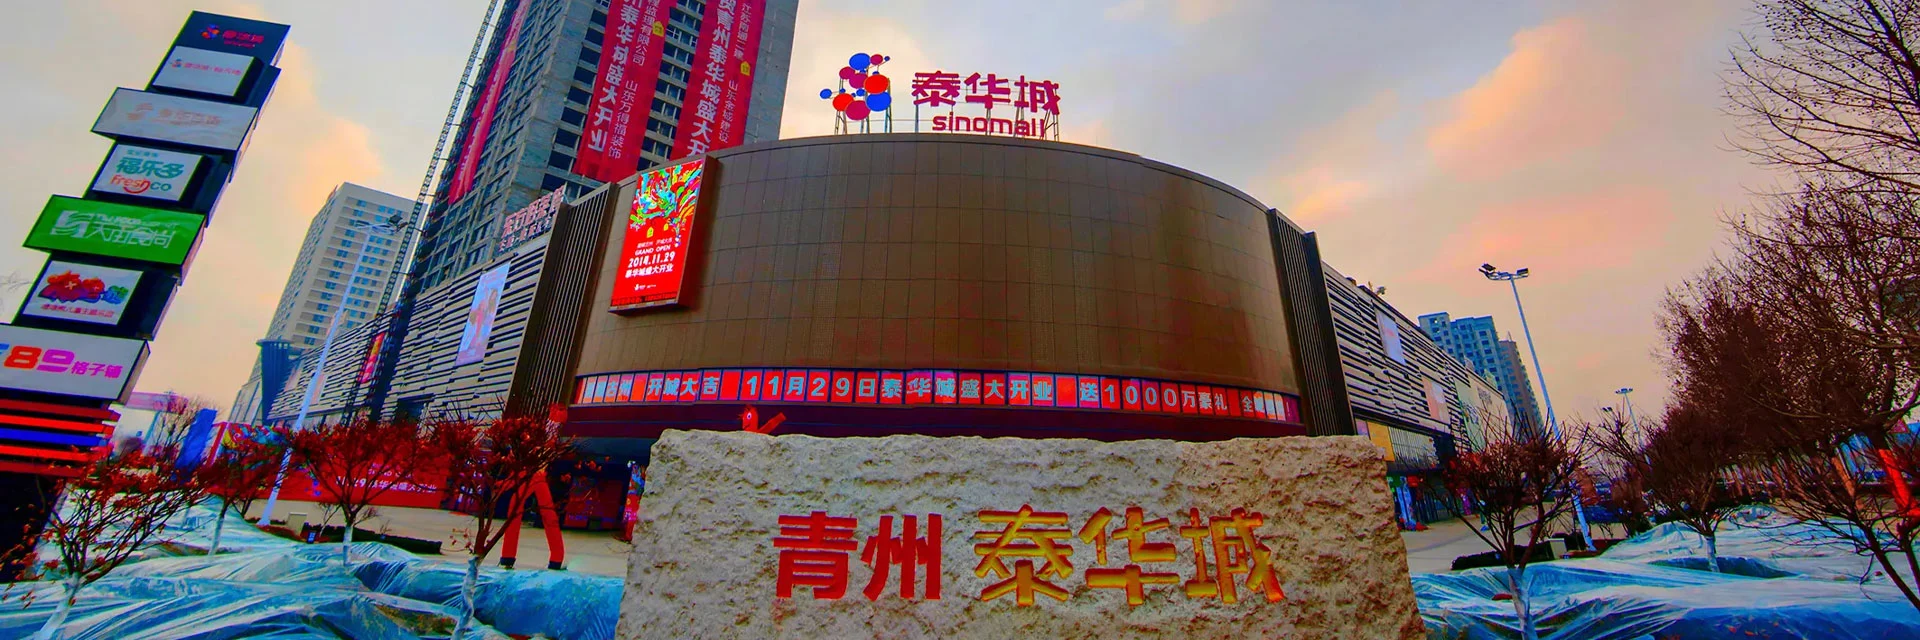 潍坊青州商场超市_大型购物中心